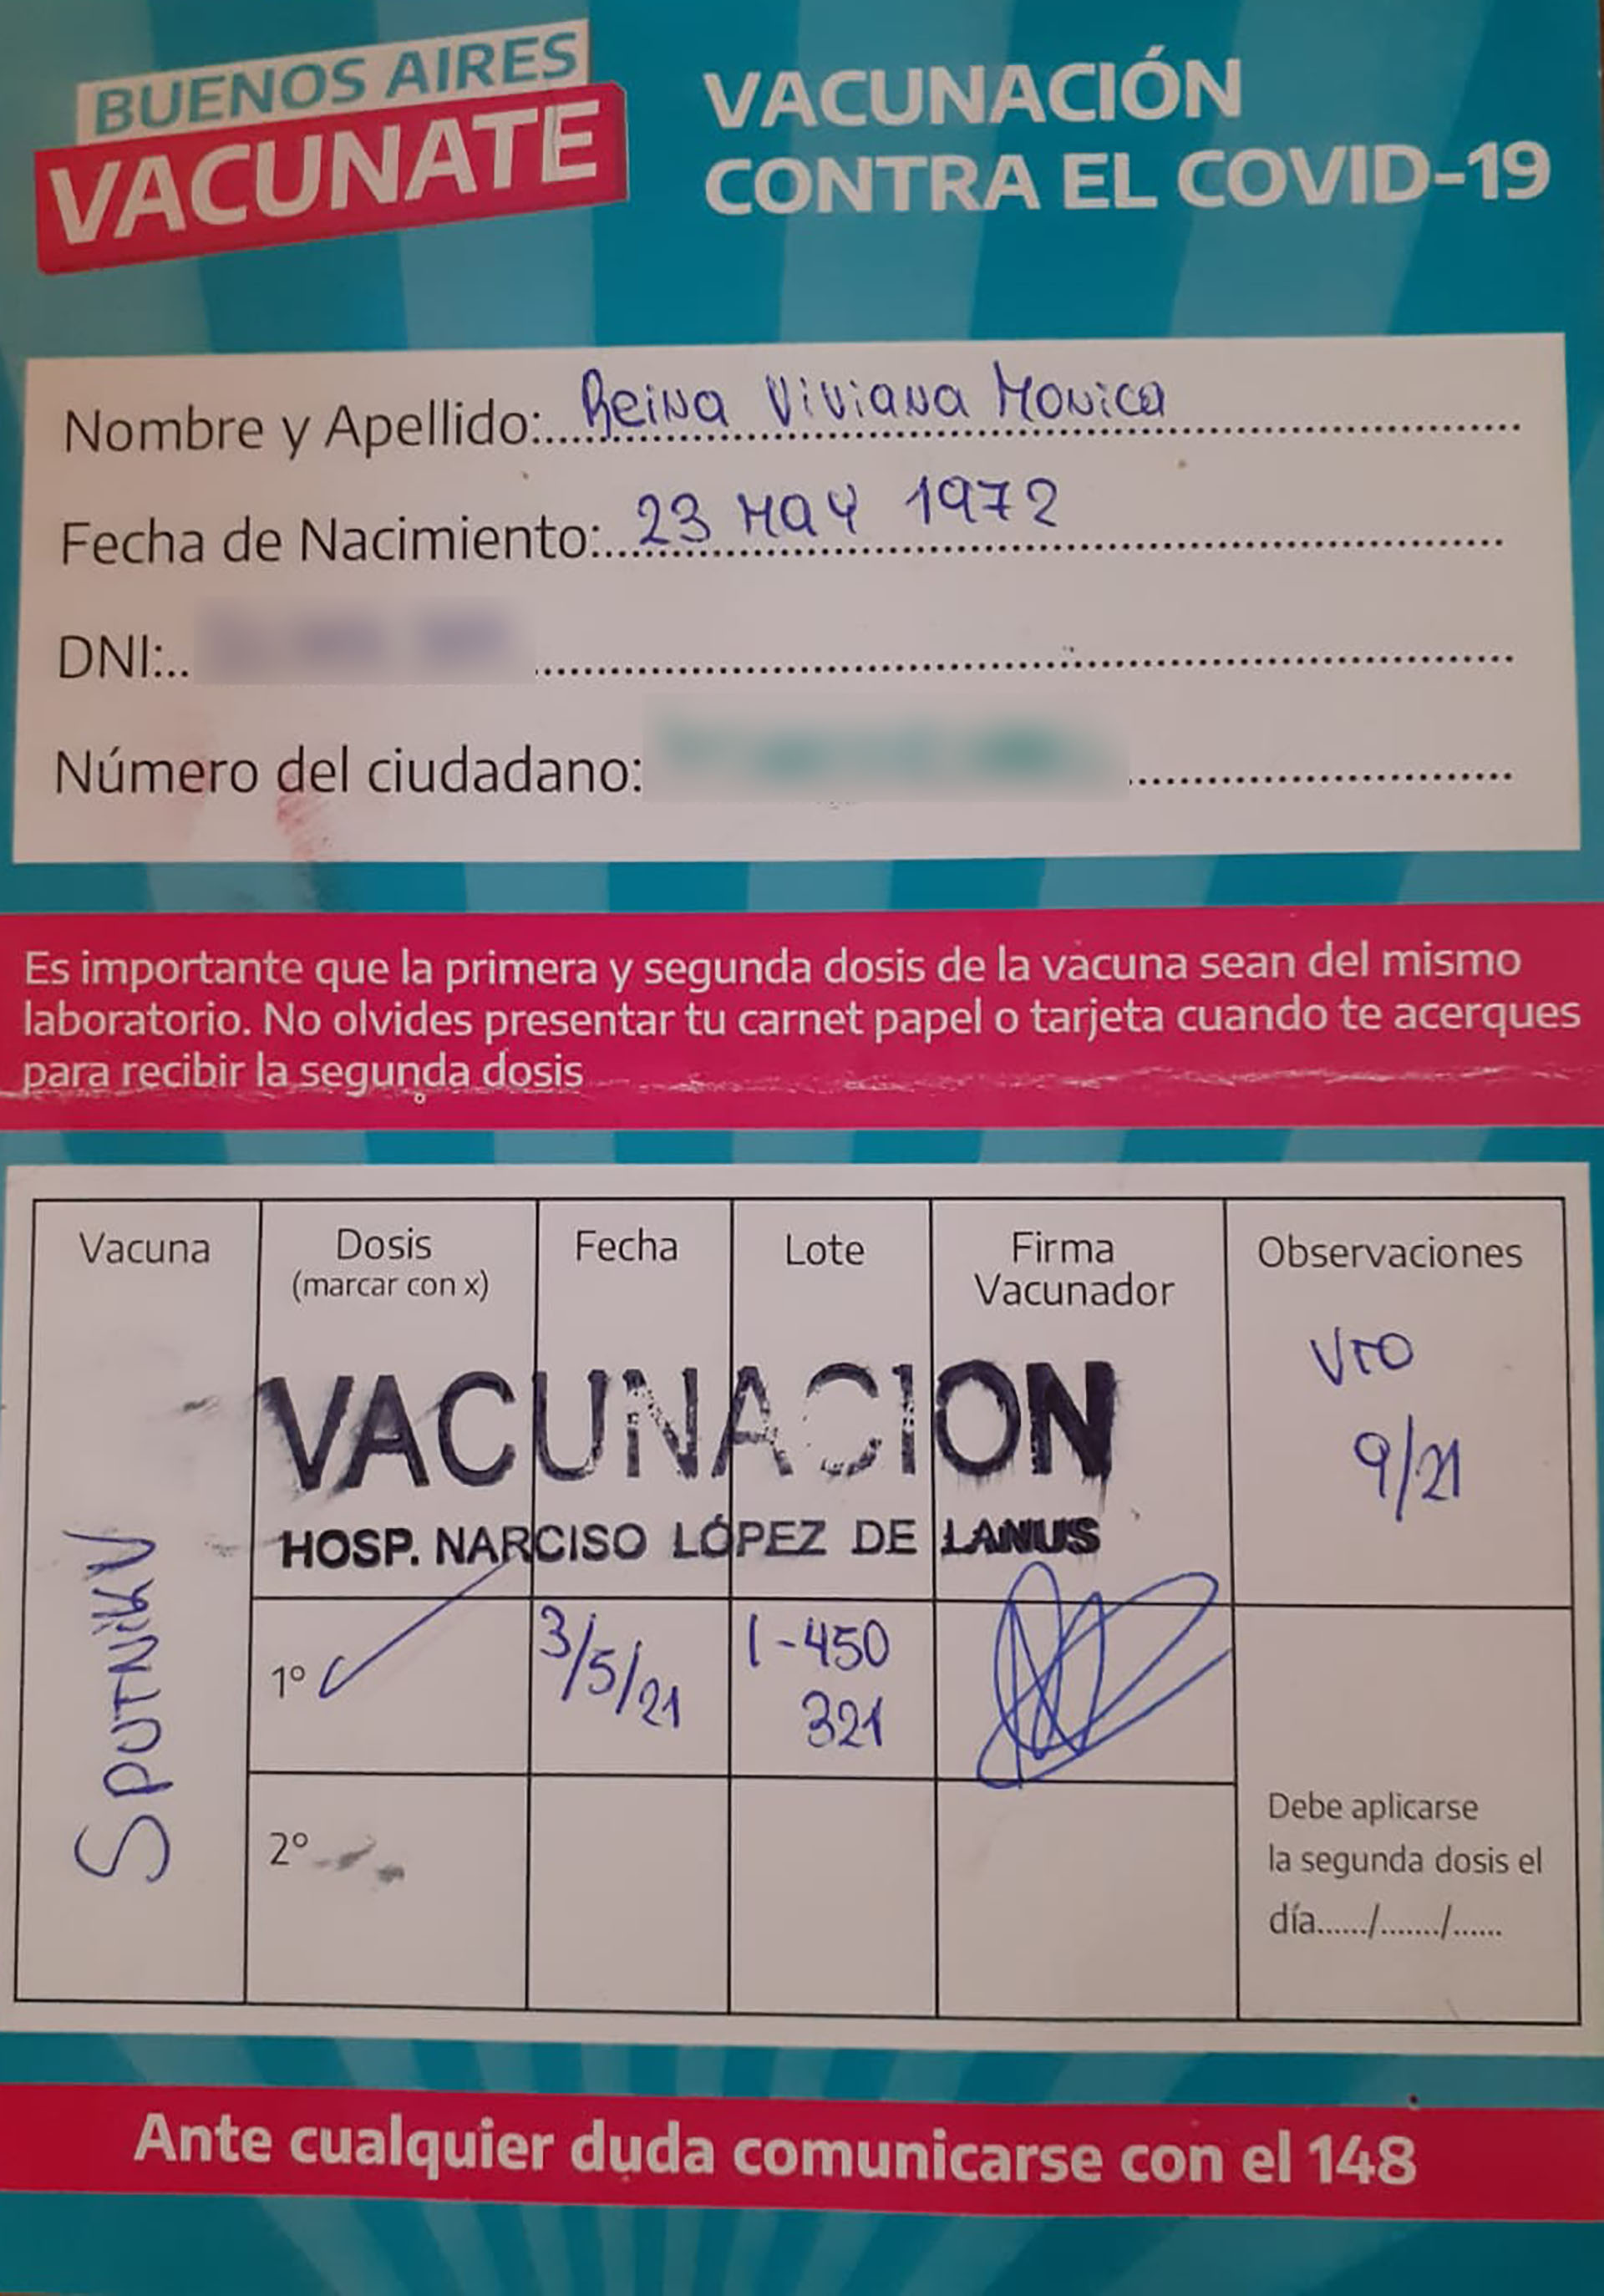 El certificado de vacunación de Viviana. El 3 de mayo se aplicó la primera dosis de Sputnik V